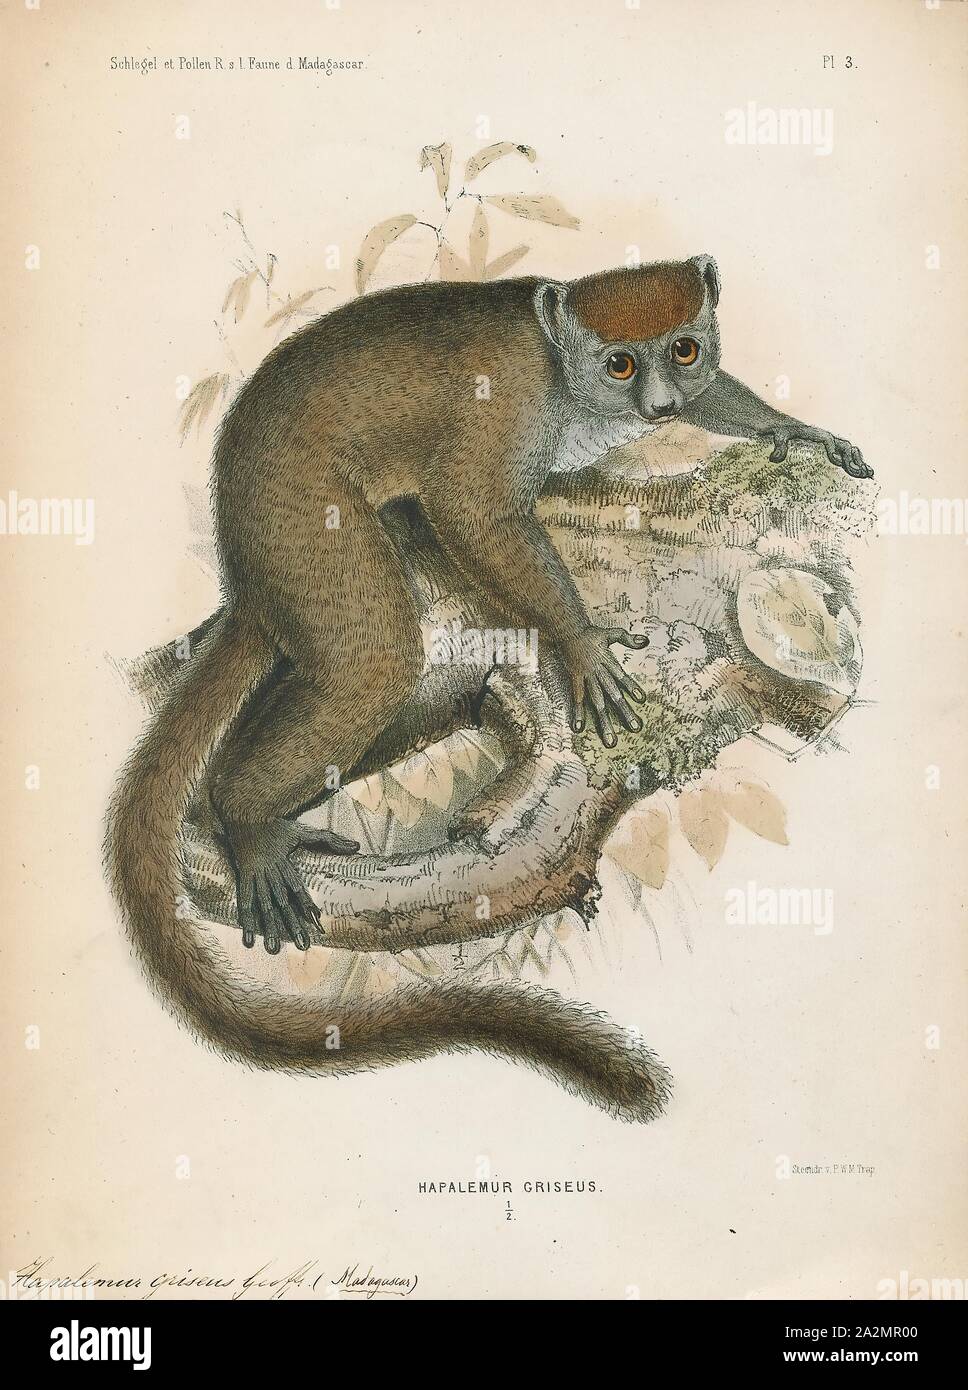 Hapalemur griseus, Drucken, die östliche weniger Bambus lemur (Hapalemur griseus), auch bekannt als die Grauen Bambus lemur, der Graue sanfte Lemur und Mahajanga lemur ist ein kleines Lemuren in Madagaskar endemisch, mit drei bekannten Unterarten. Wie der Name schon sagt, die östliche weniger Bambus lemur ernährt sich hauptsächlich von Bambus. Die lemuren der Gattung Hapalemur haben mehr manuelle Geschicklichkeit und Koordination von Hand und Auge, als die meisten Lemuren. Es handelt sich um senkrechte Kletterer und Springen von Stiel in dicken Bambus Wälder zu pirschen., 1868 Stockfoto